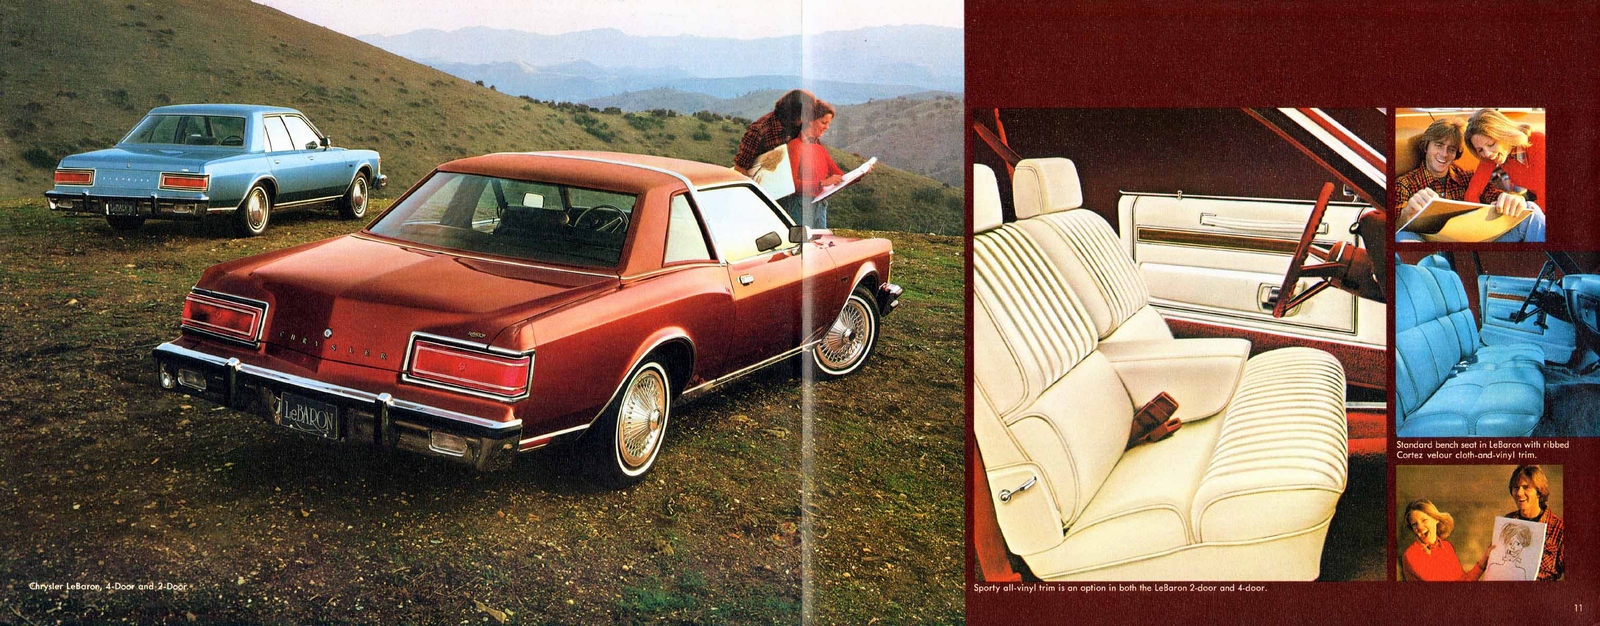 n_1978 Chrysler LeBaron-10-11.jpg